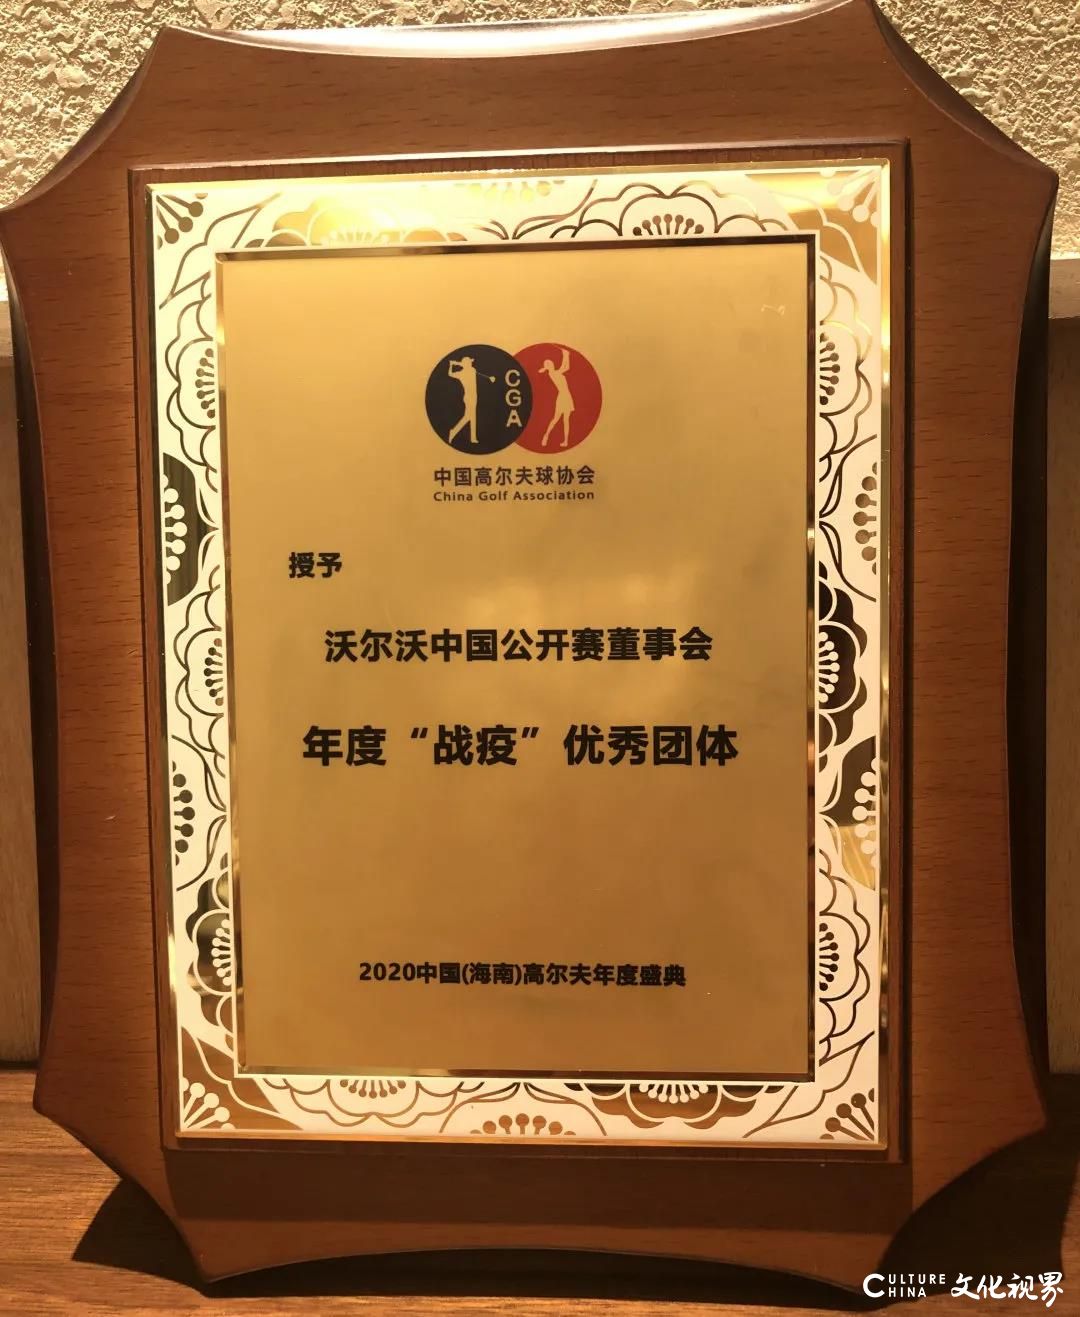 沃尔沃中国公开赛荣膺“2020年中国高尔夫振奋人心的事件”第二位